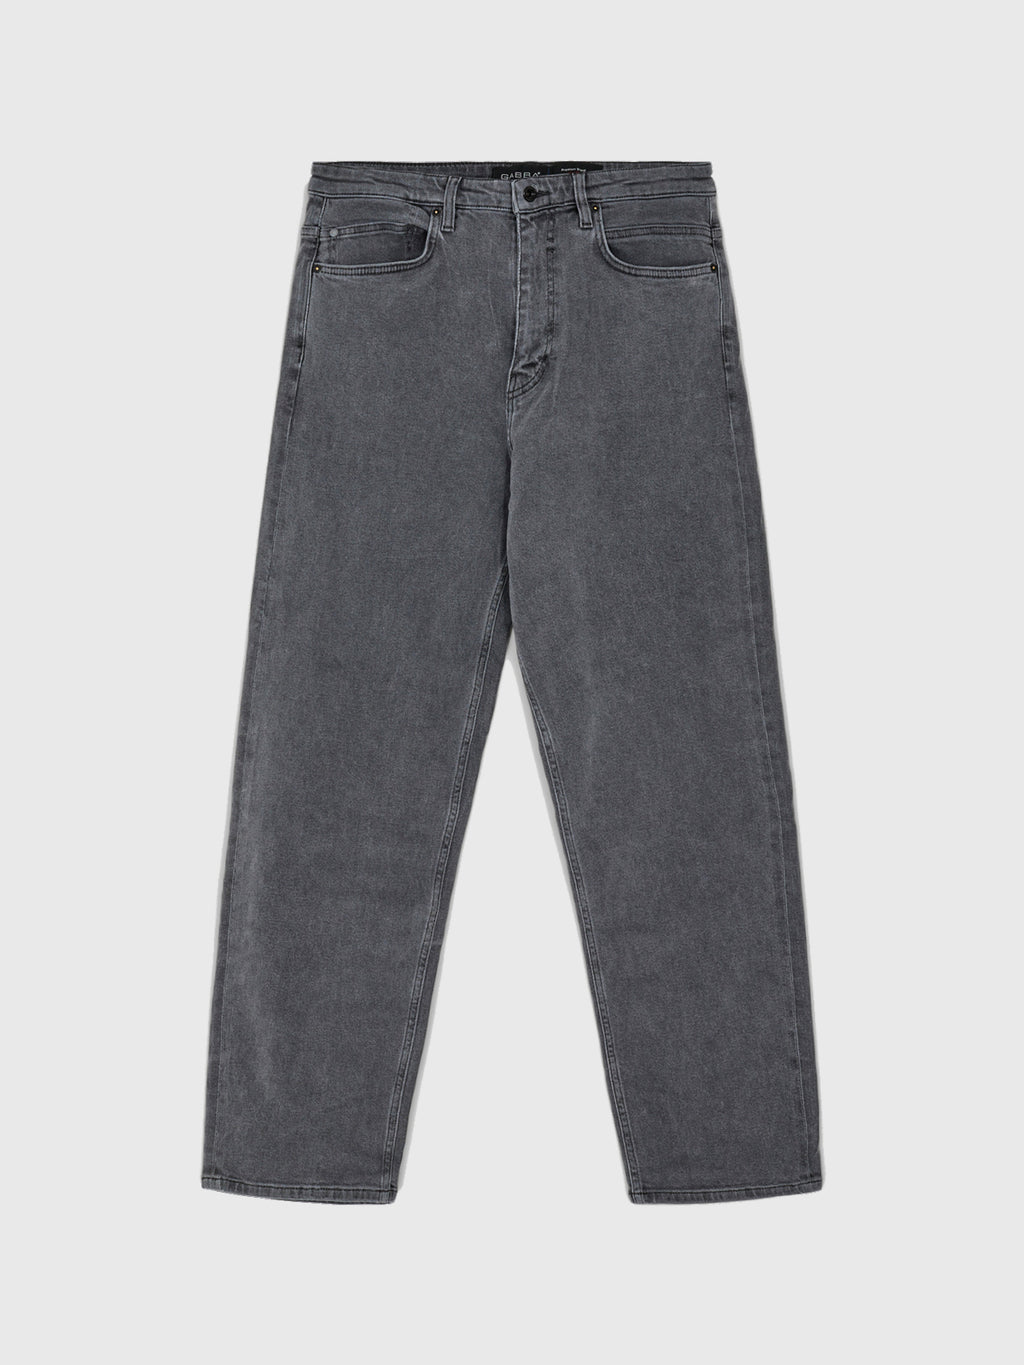 Zem K4430 Jeans - Grey Denim